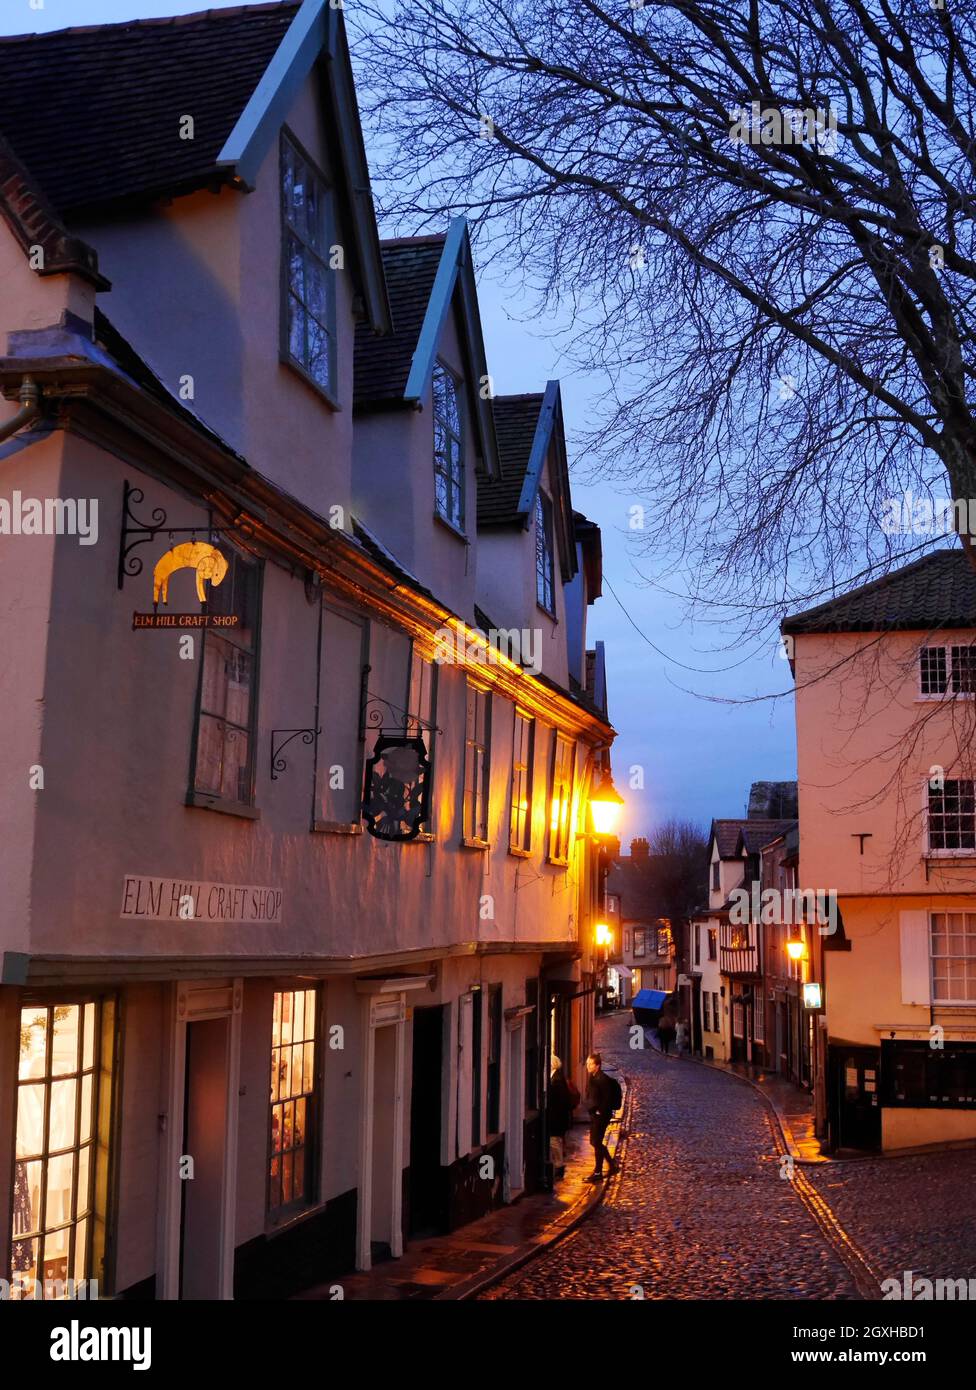 La colline historique pavée d'Elm à Nightfall avec ses lanternes dorées et ses fenêtres illuminées, Norwich, Norfolk, Angleterre, Royaume-Uni Banque D'Images